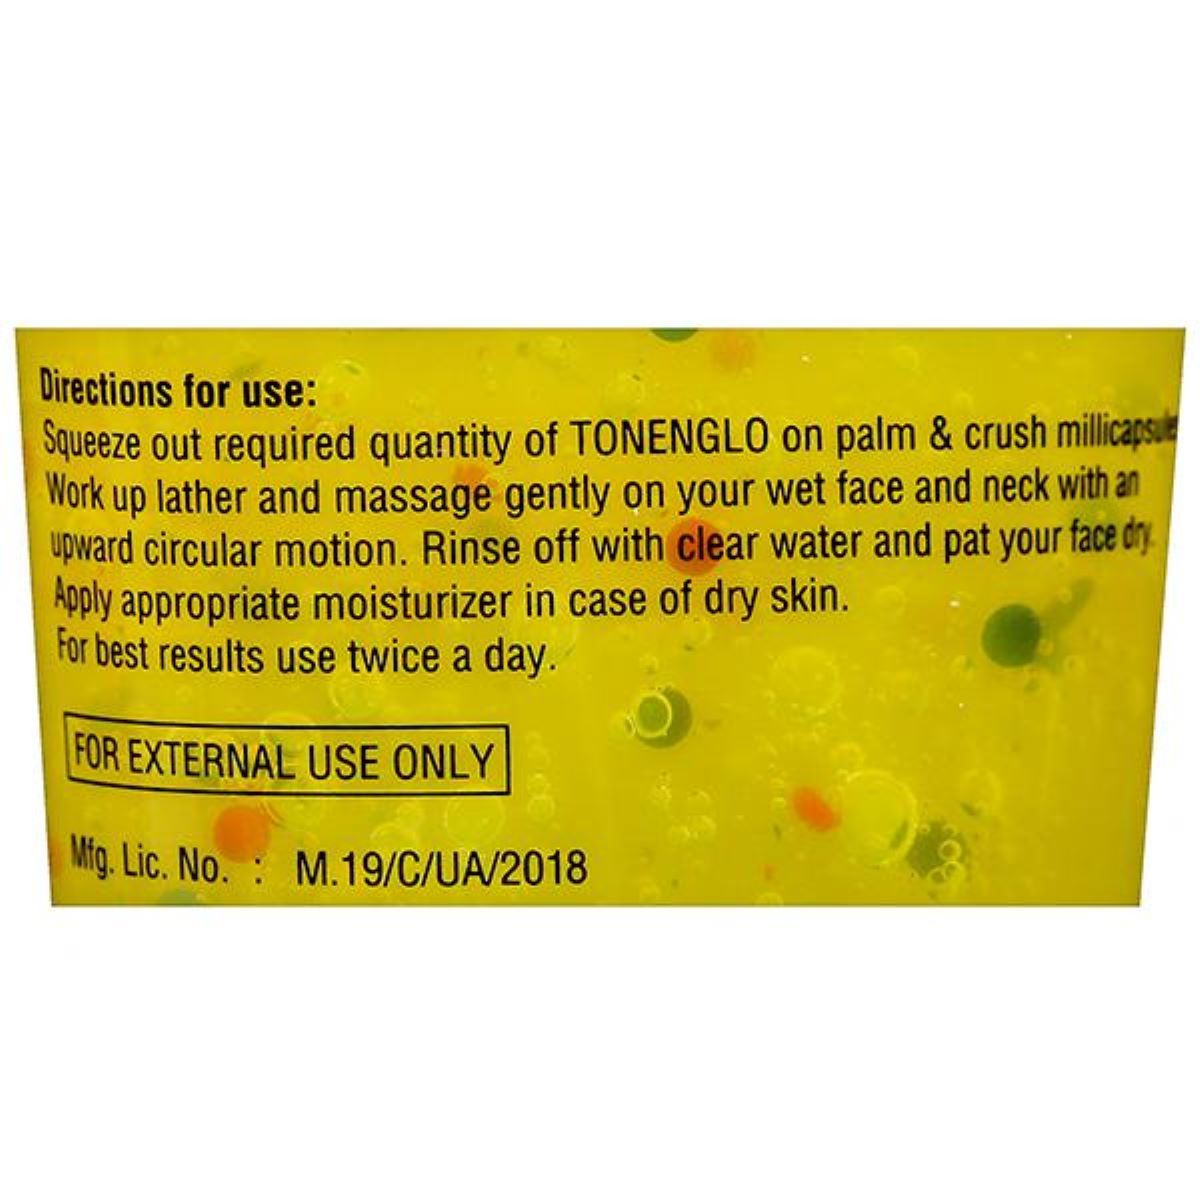 Tone N Glo Skin Rejuvenating Face Wash Gel, 100 gm, Pack of 1 